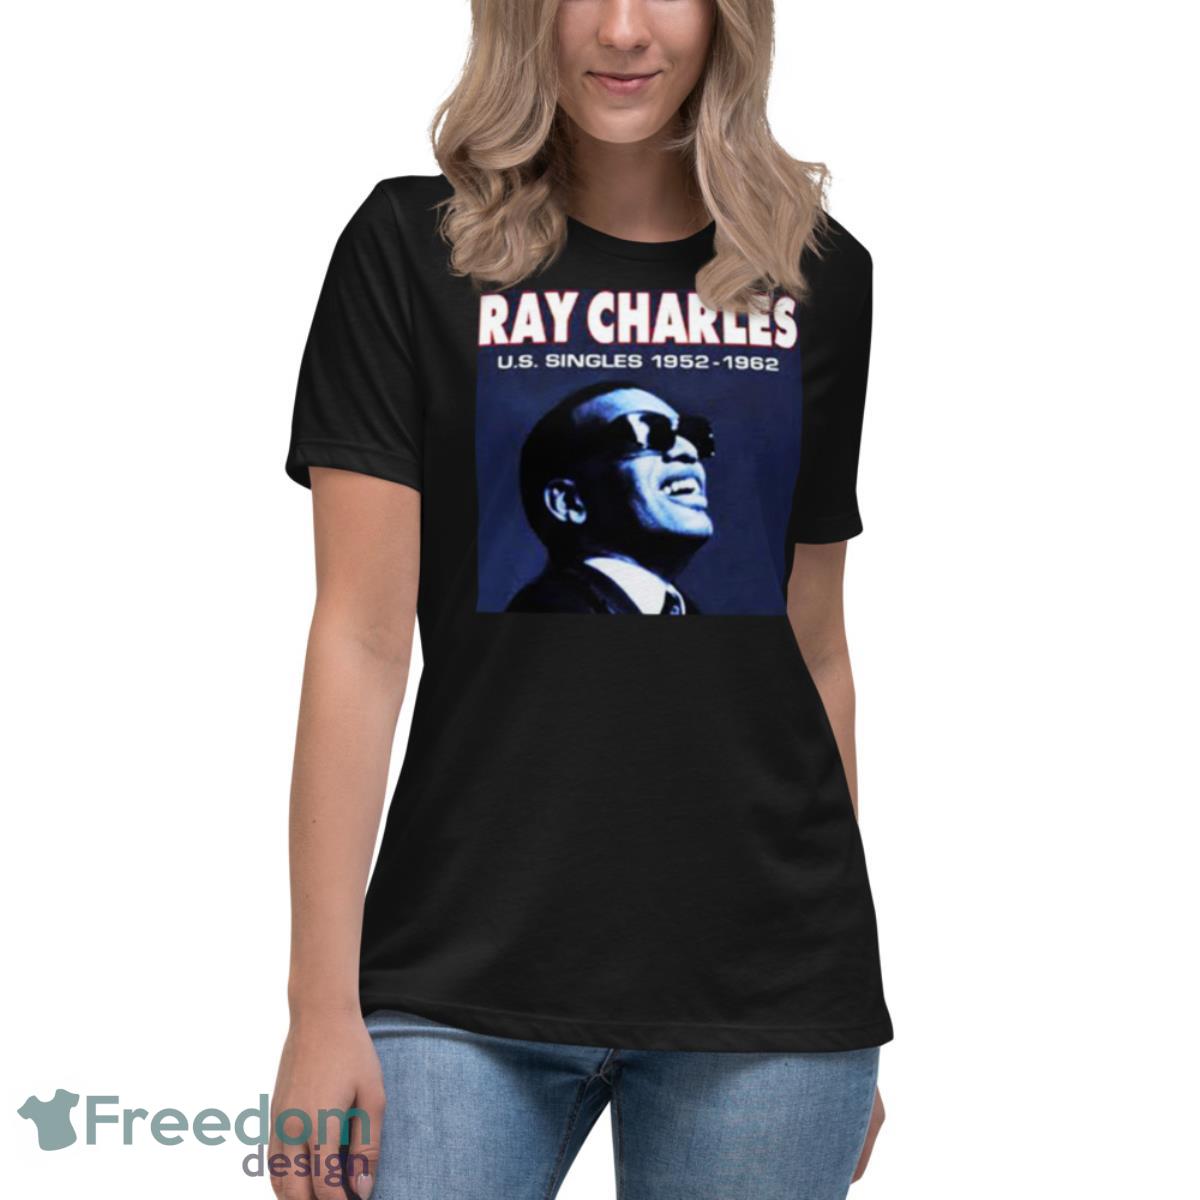 Us Singles 1952 1962 Ray Charles shirt